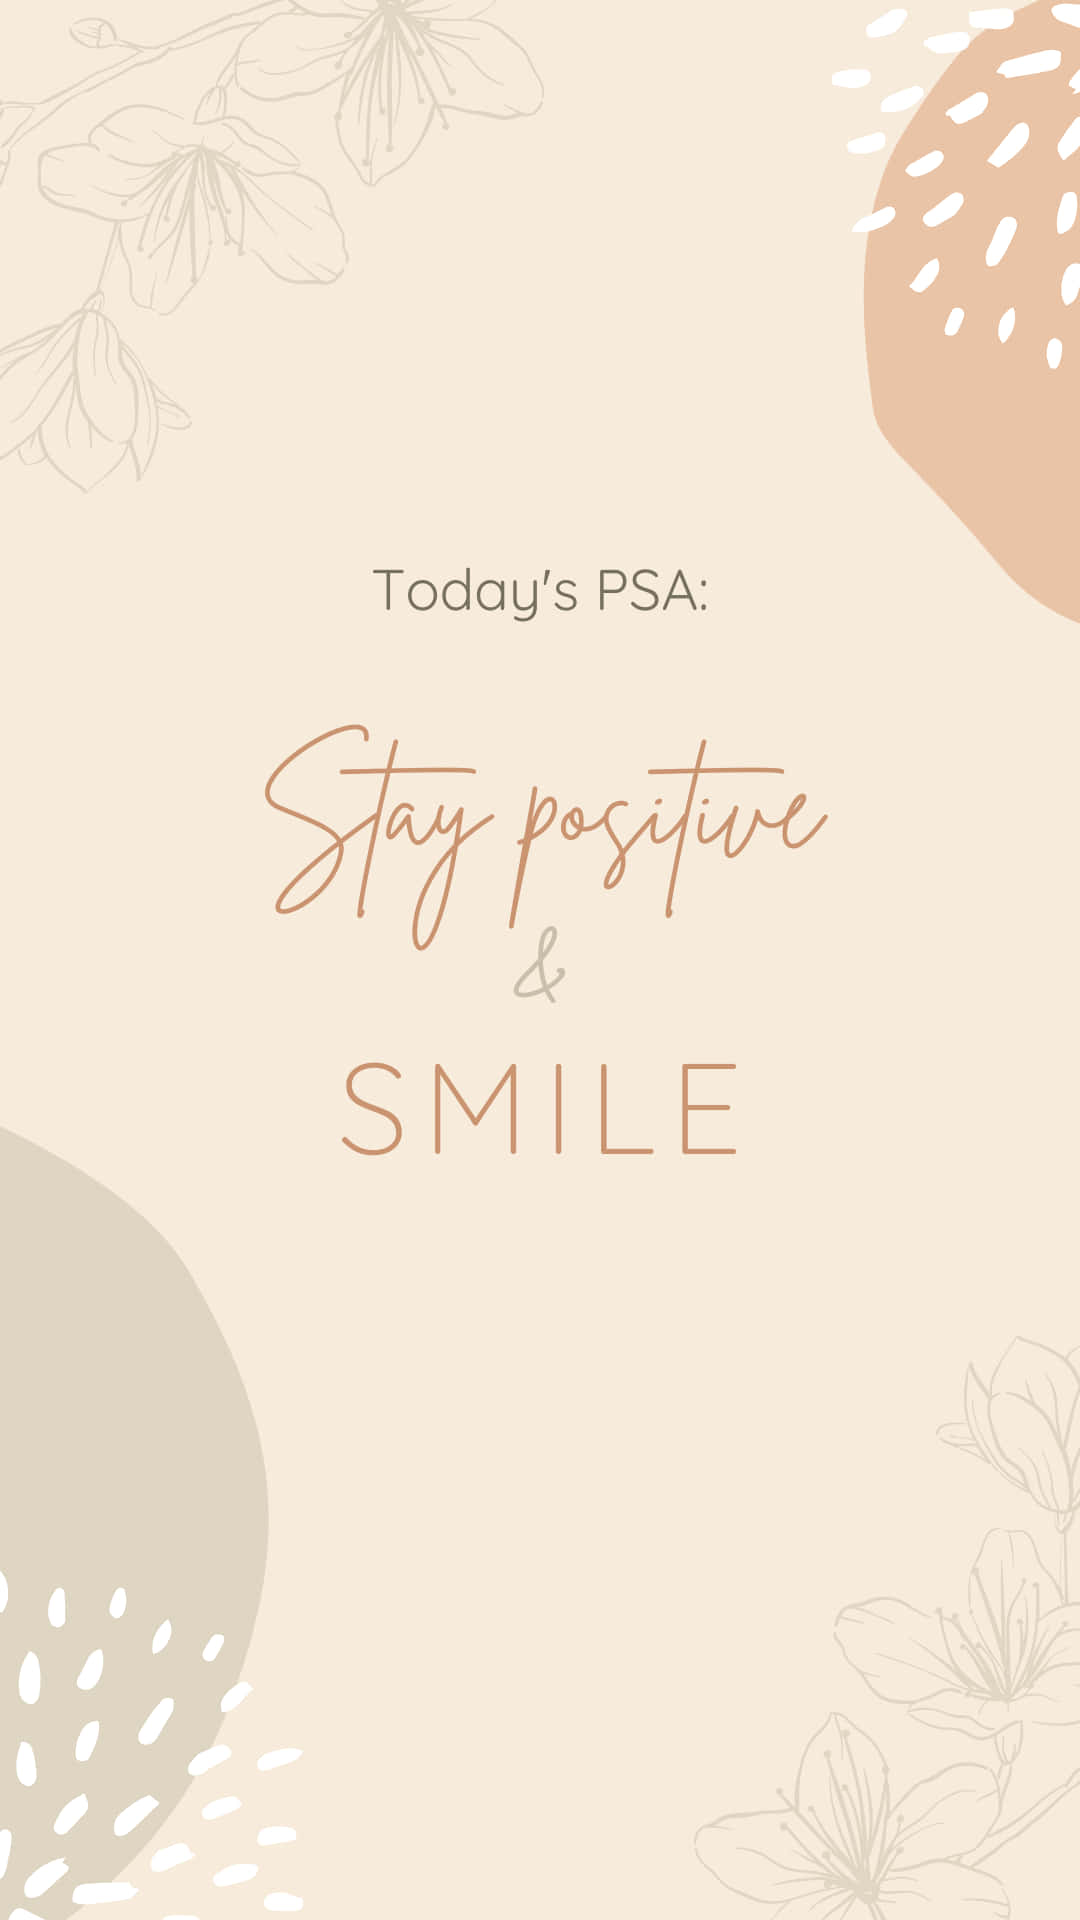 Elanuncio De Hoy: Mantén Una Actitud Positiva Y Sonríe. Fondo de pantalla